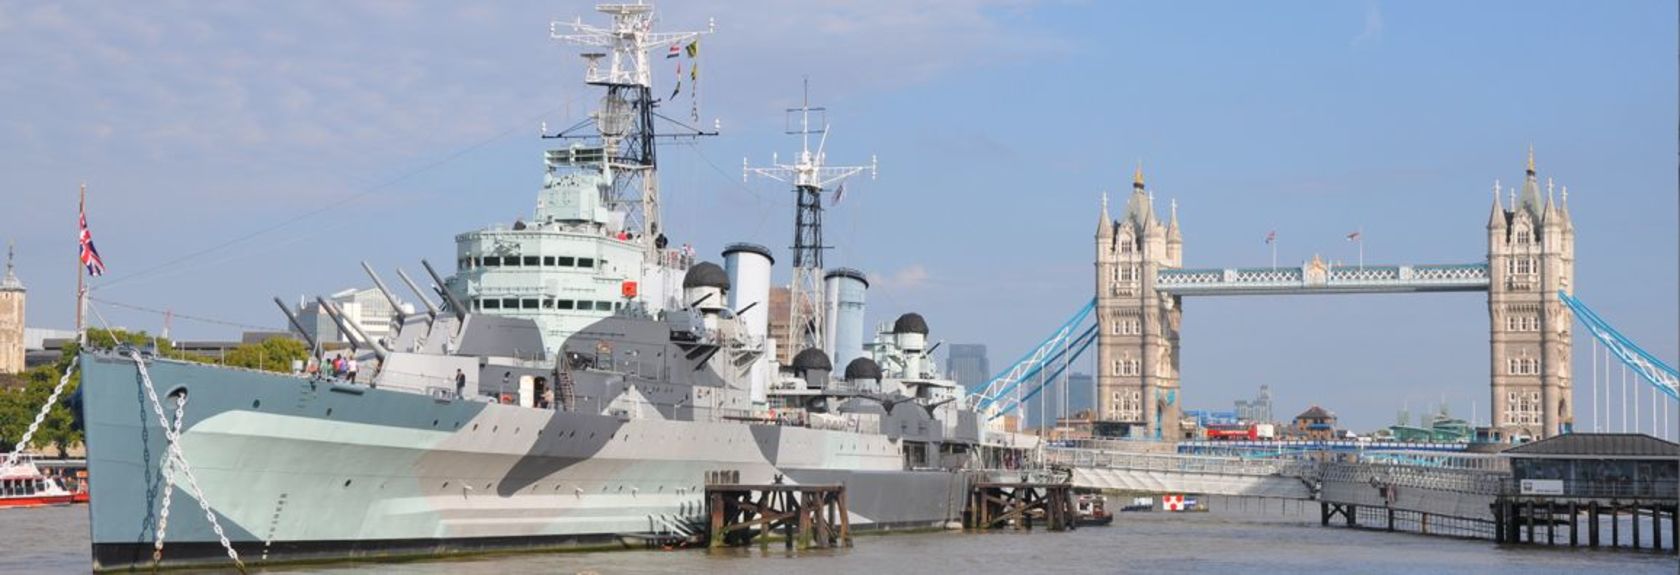 Se você caminhar ao longo do Tamisa no centro de Londres, você verá um gigantesco navio de guerra deitado na água, perto da Tower of London